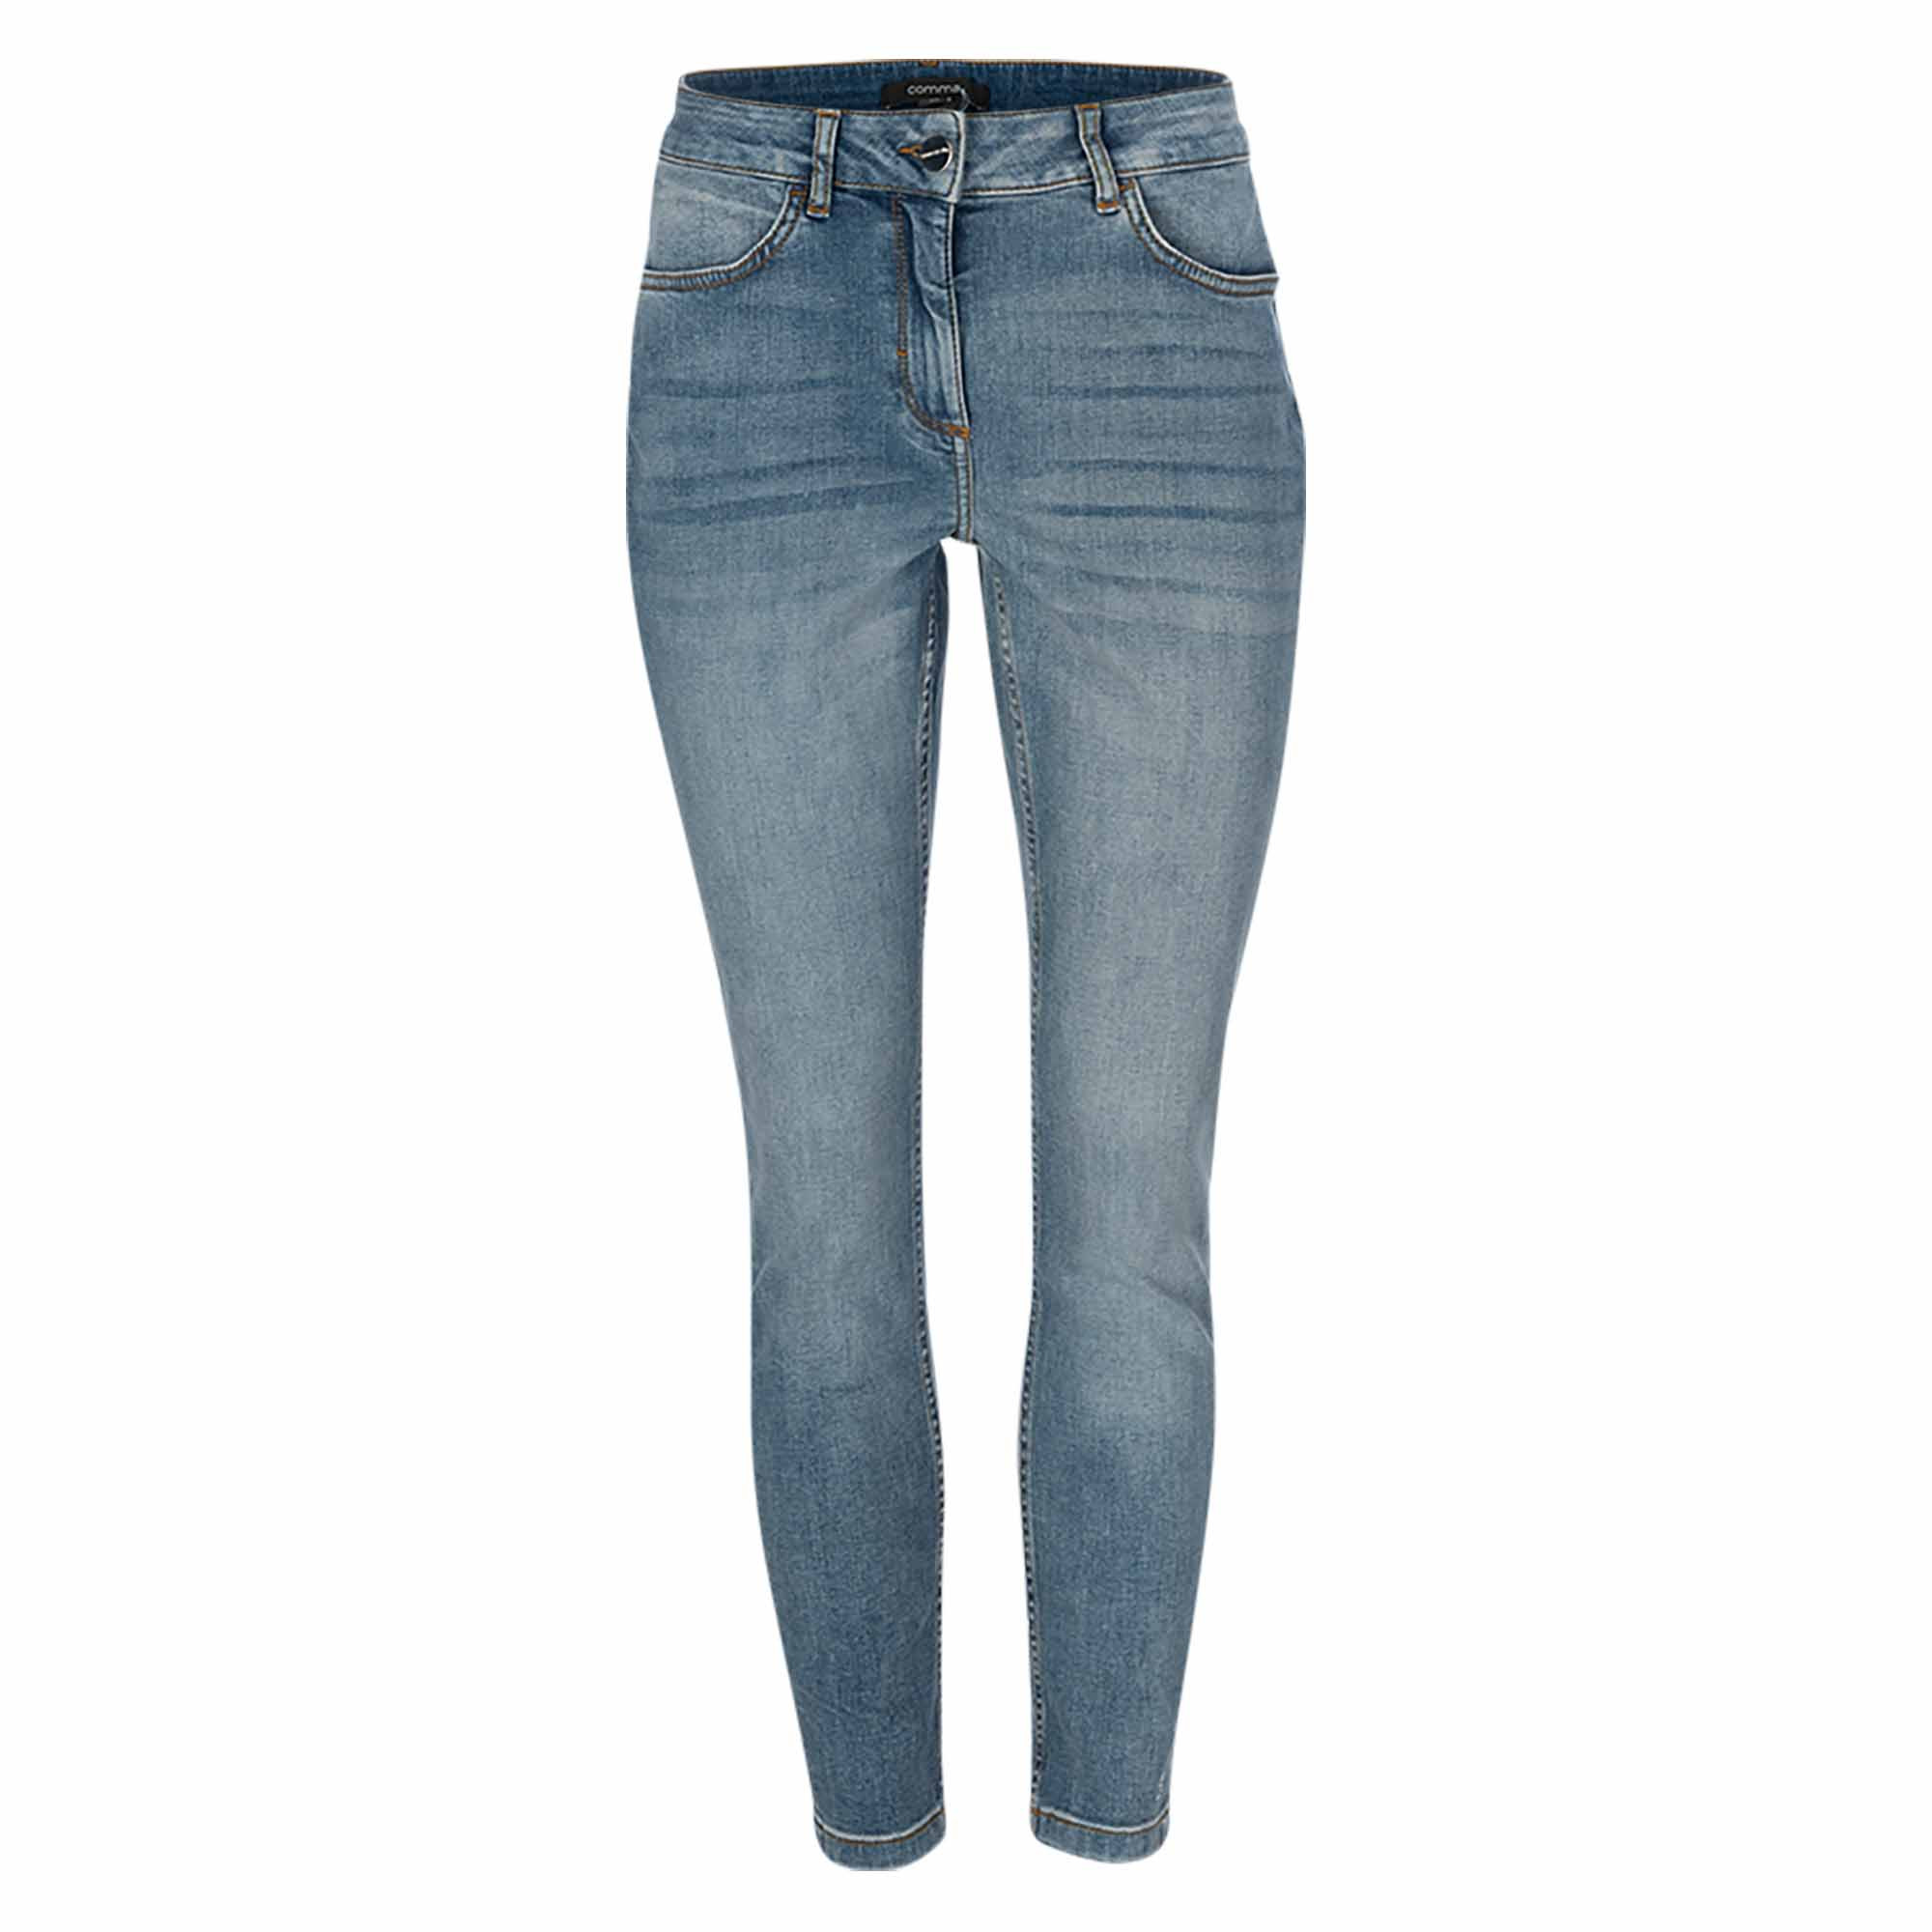 Jeans - Skinny Fit June online im bei kaufen Mein Fischer